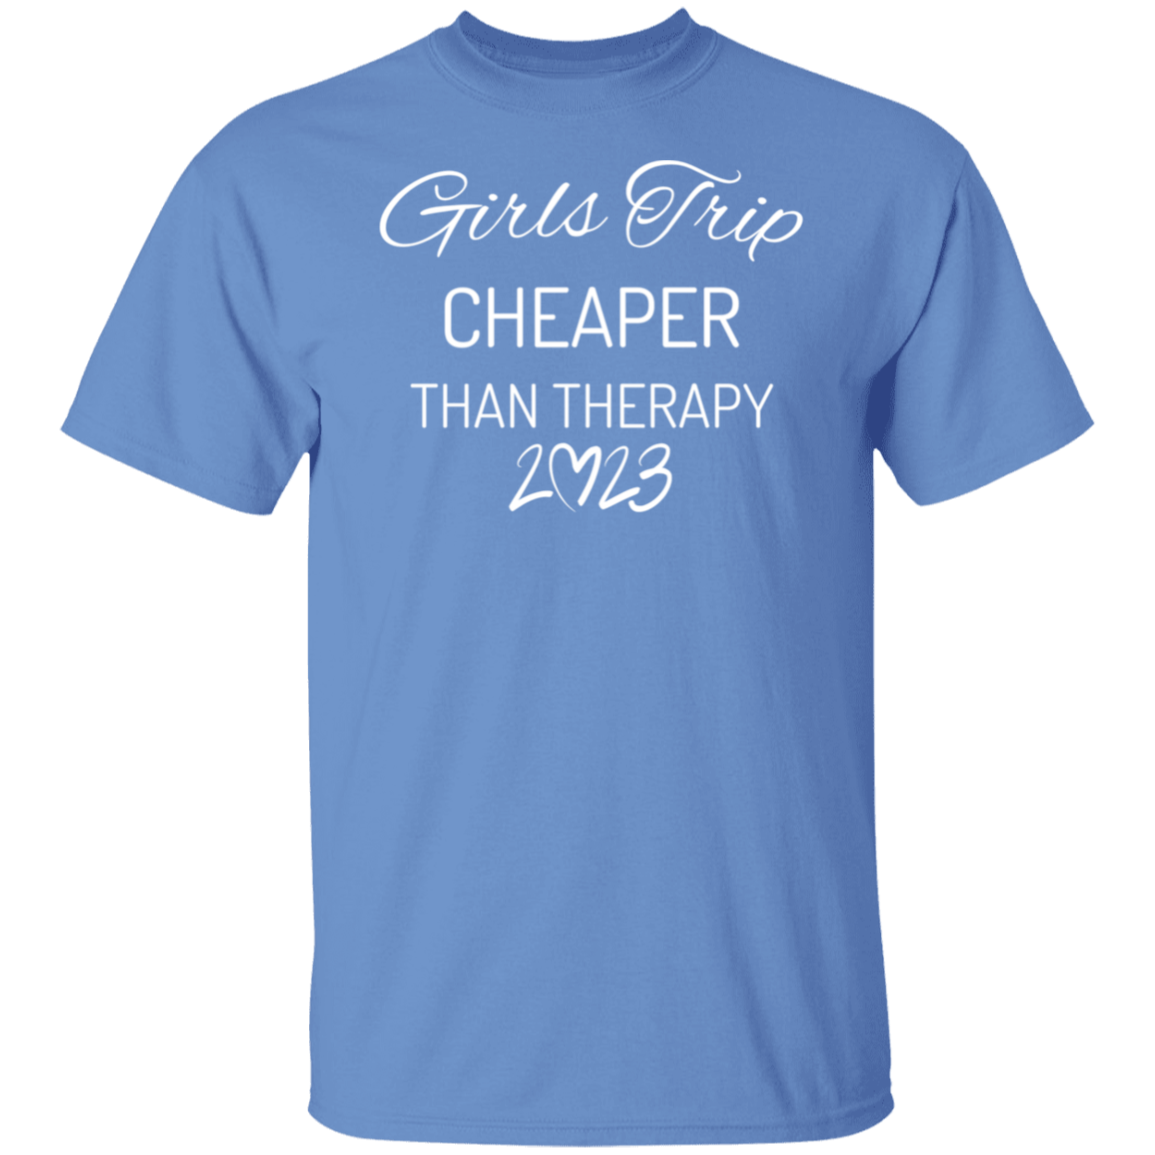 Girls Trip Shirts, Cheaper Than Therapy | Girls Weekend Shirt, Girls Night Out Shirt, Girls Vacation Shirt, Besties Shirt